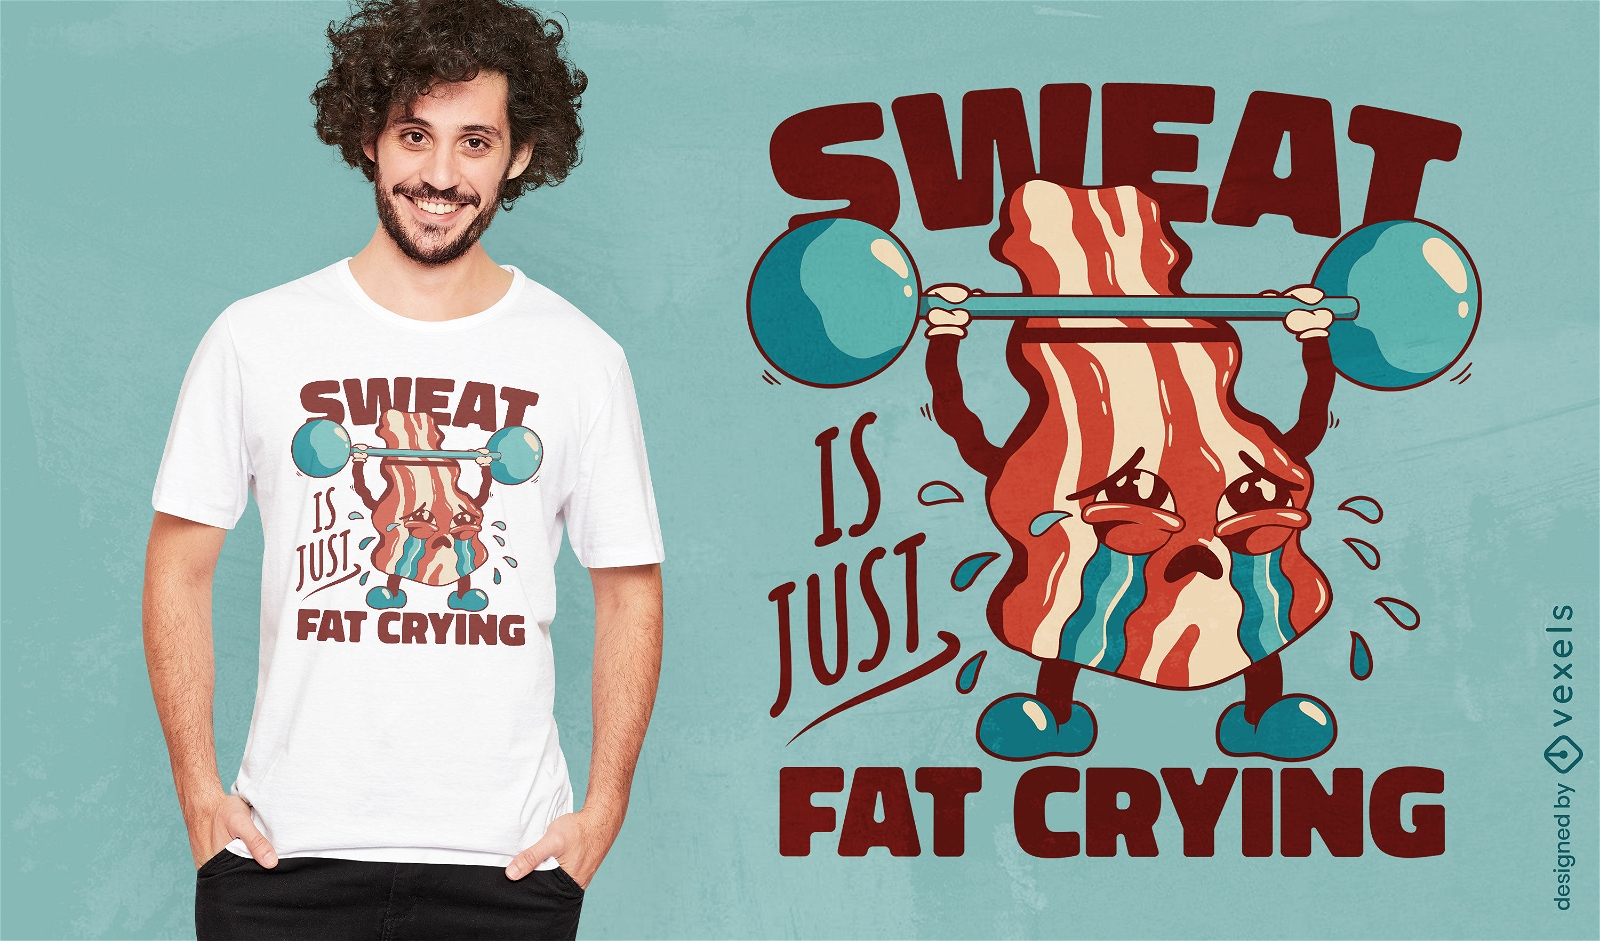 Bacon levantando pesos com design engraçado de camiseta